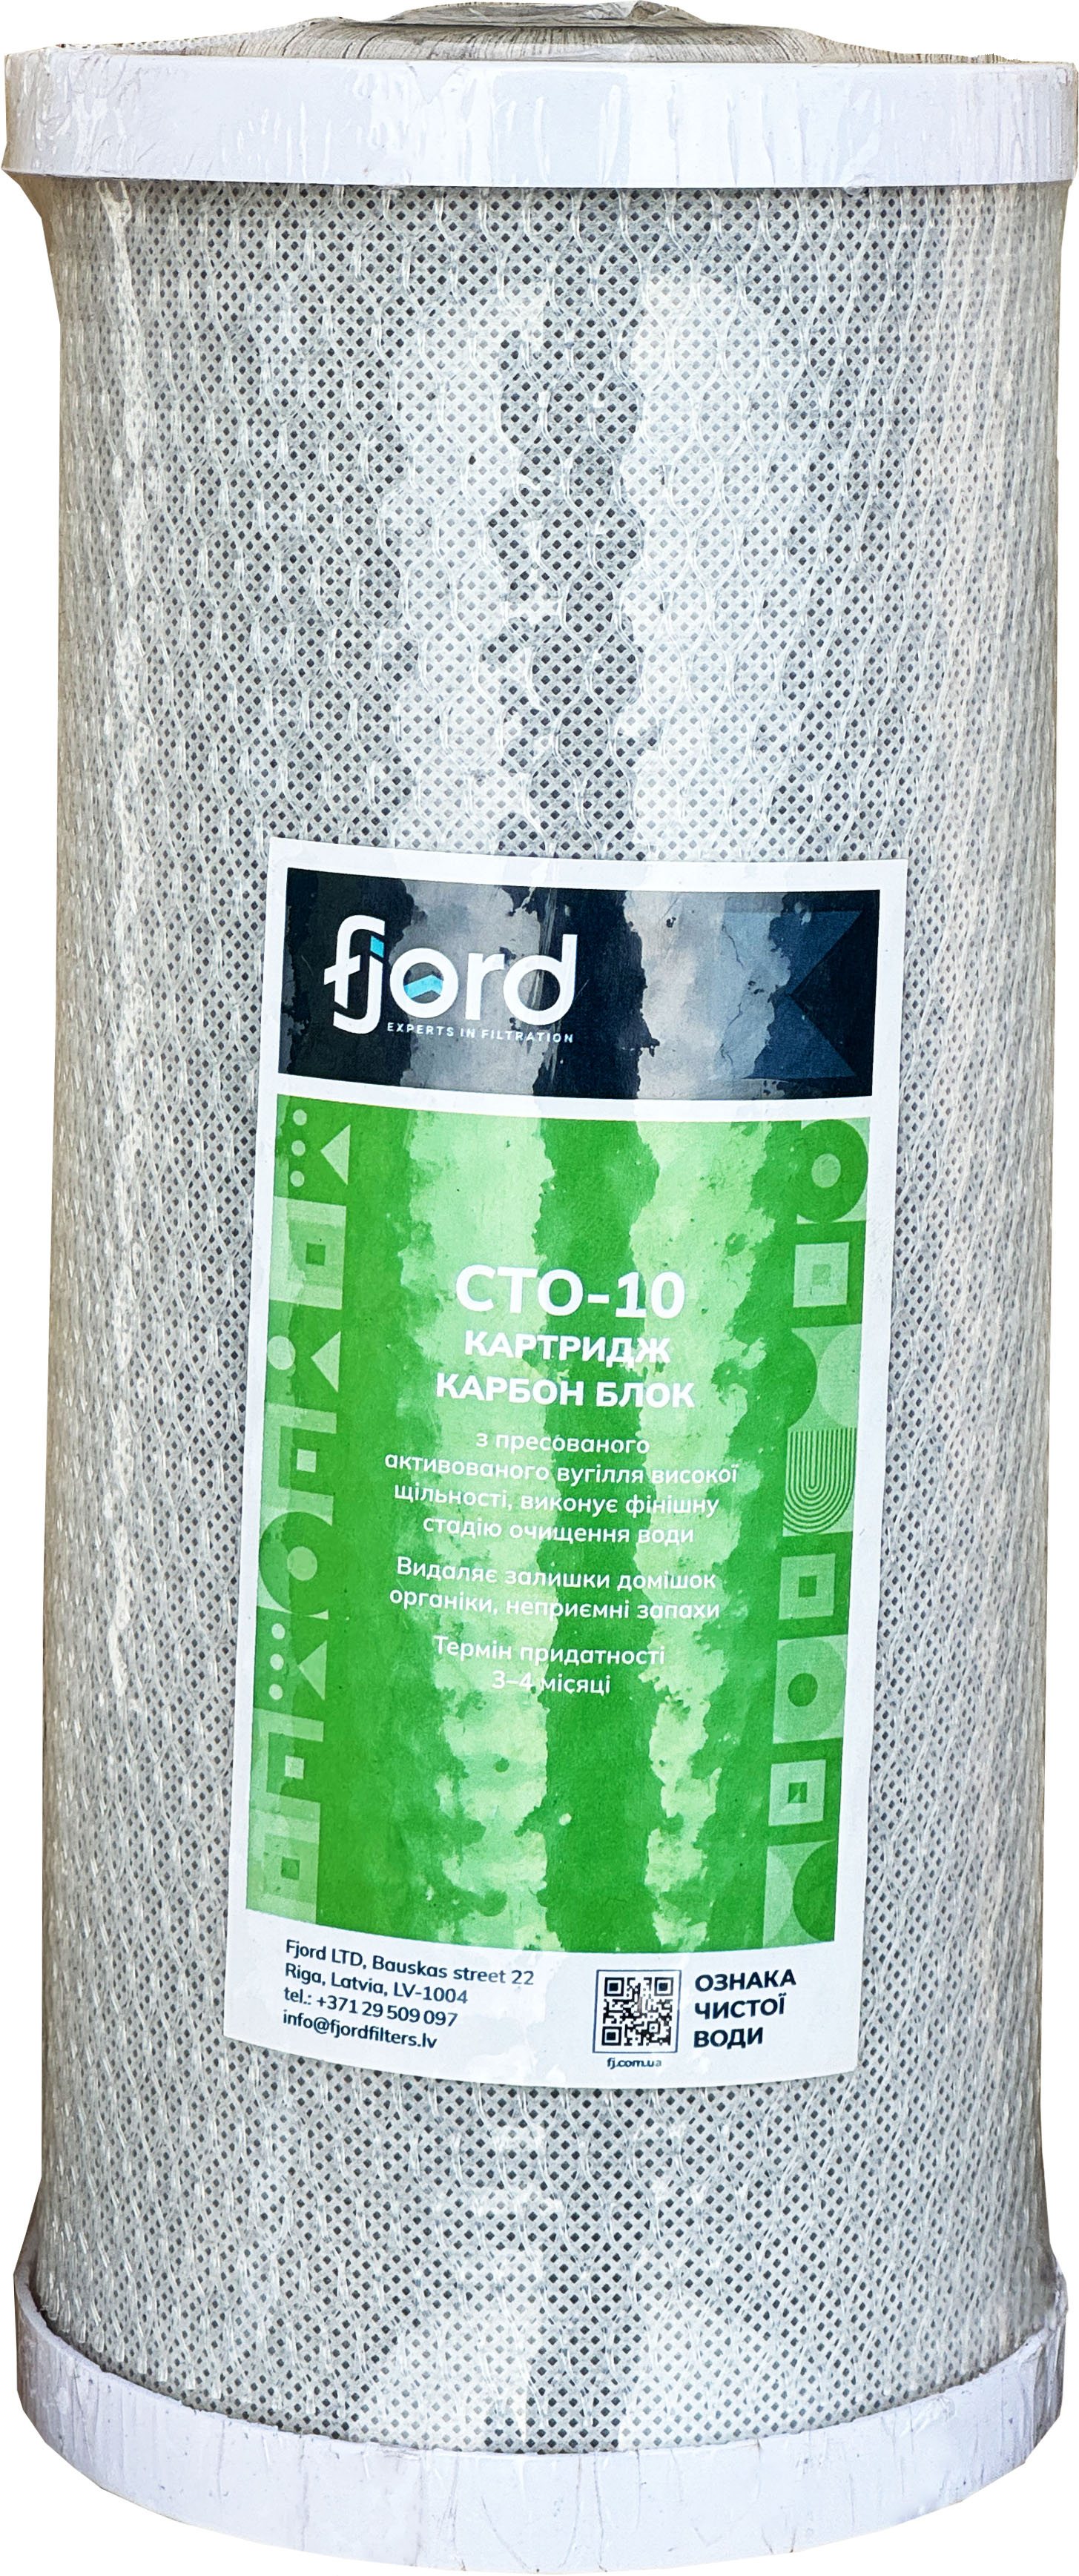 Картридж для фільтру Fjord CTO-BB10 (вугілля)